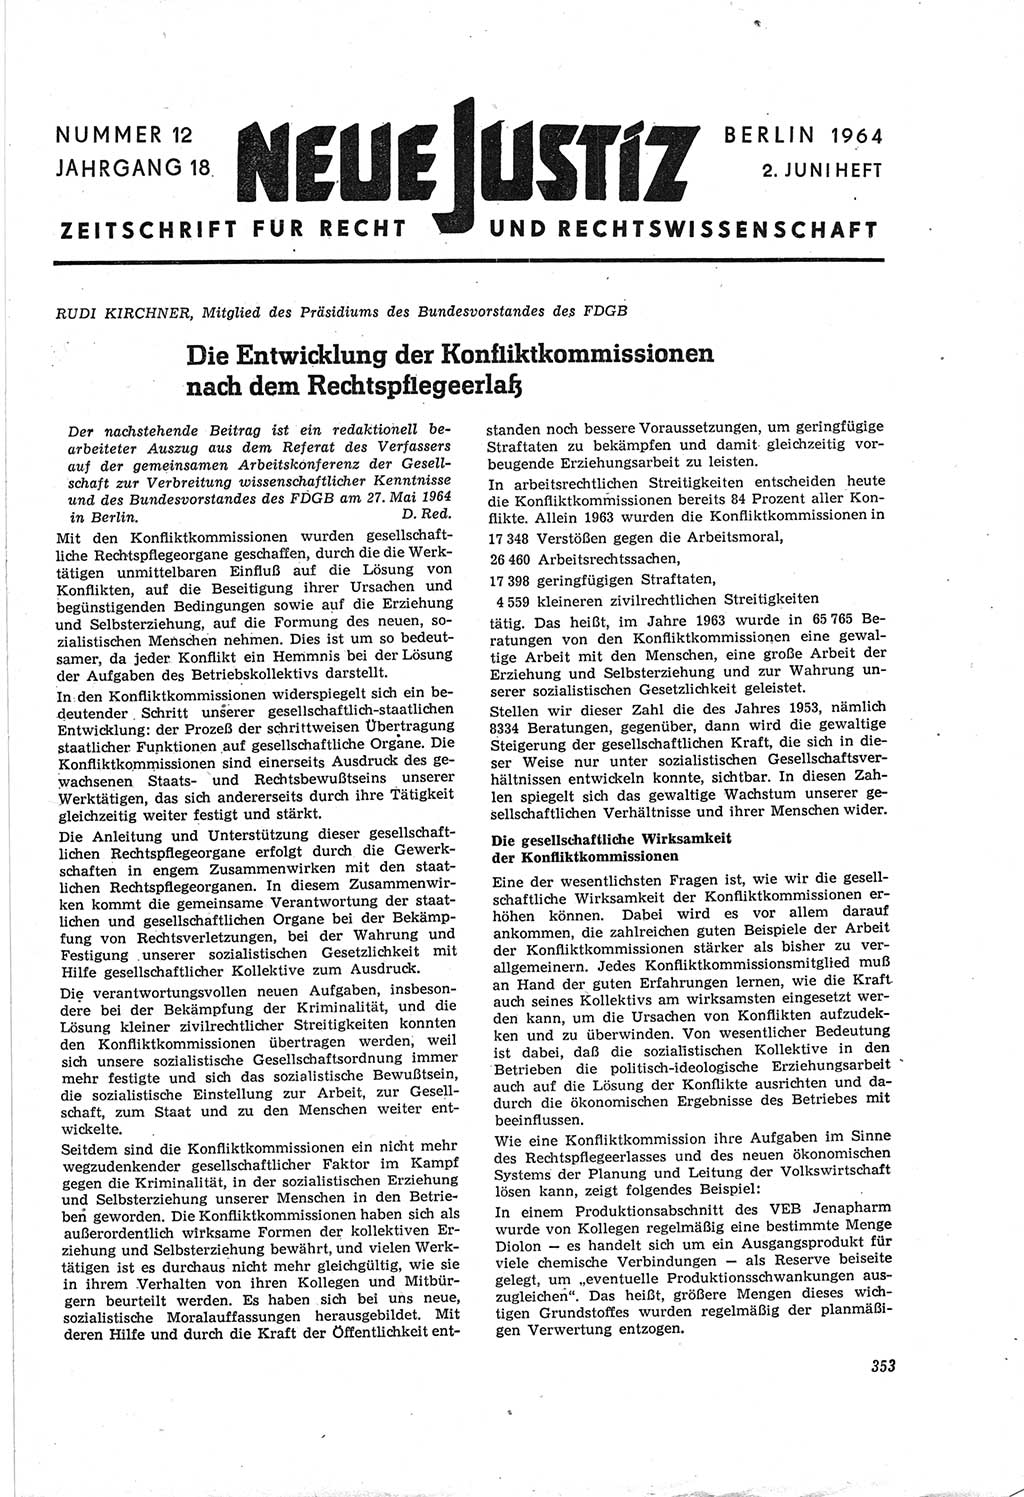 Neue Justiz (NJ), Zeitschrift für Recht und Rechtswissenschaft [Deutsche Demokratische Republik (DDR)], 18. Jahrgang 1964, Seite 353 (NJ DDR 1964, S. 353)